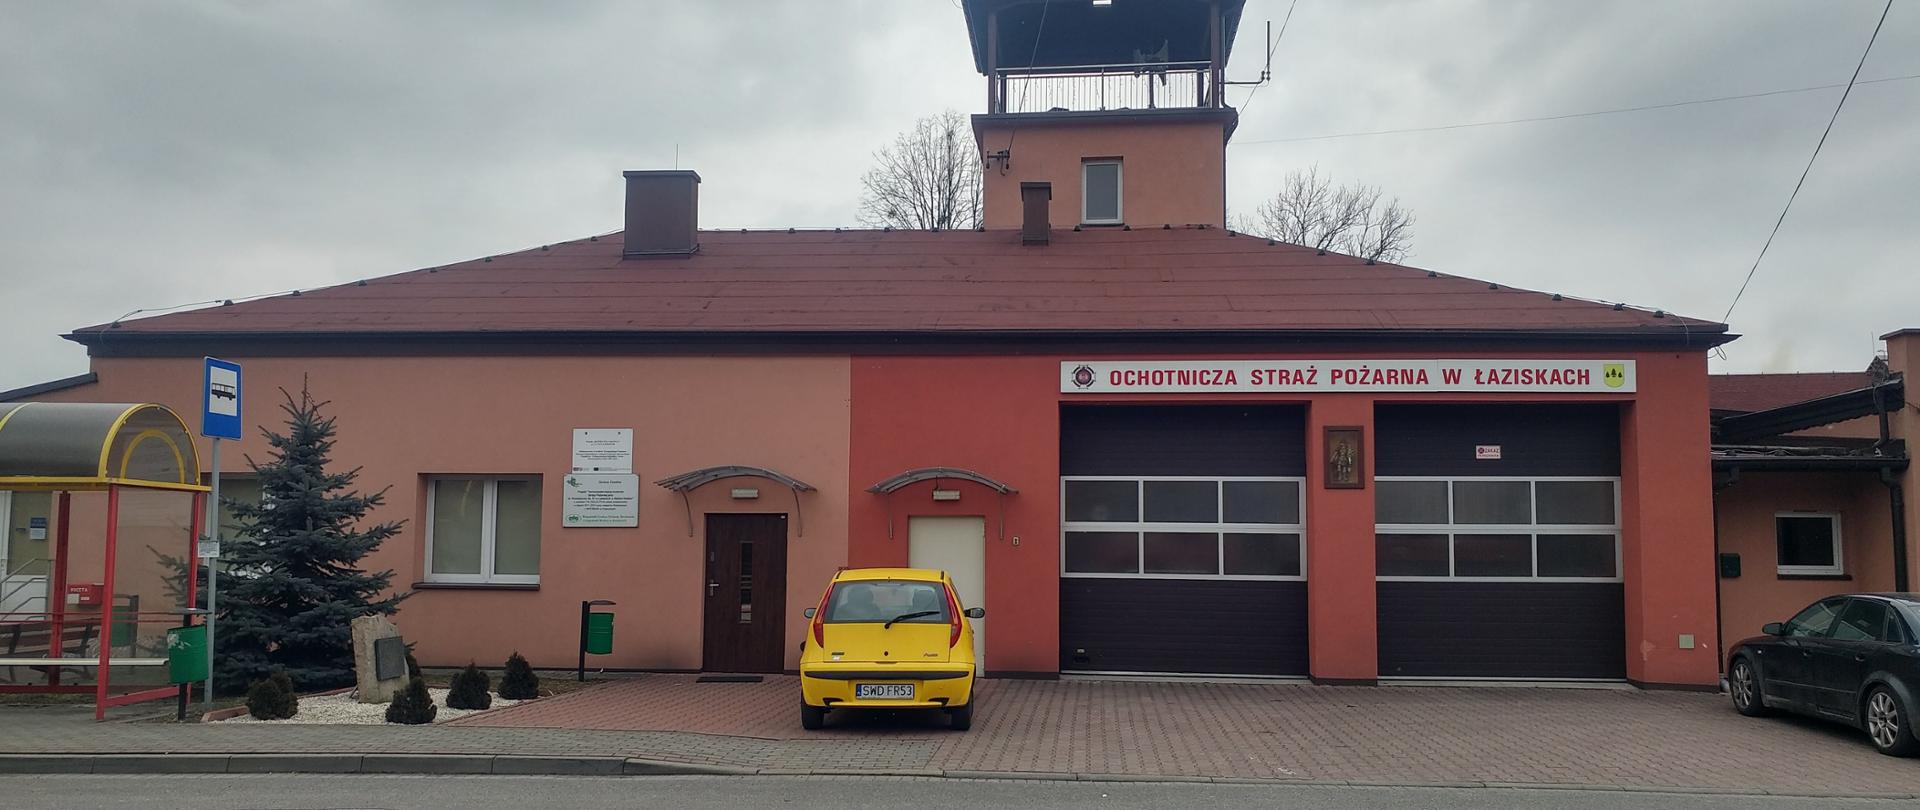 Zdjęcie prezentuje budynek jednostki OSP Łaziska